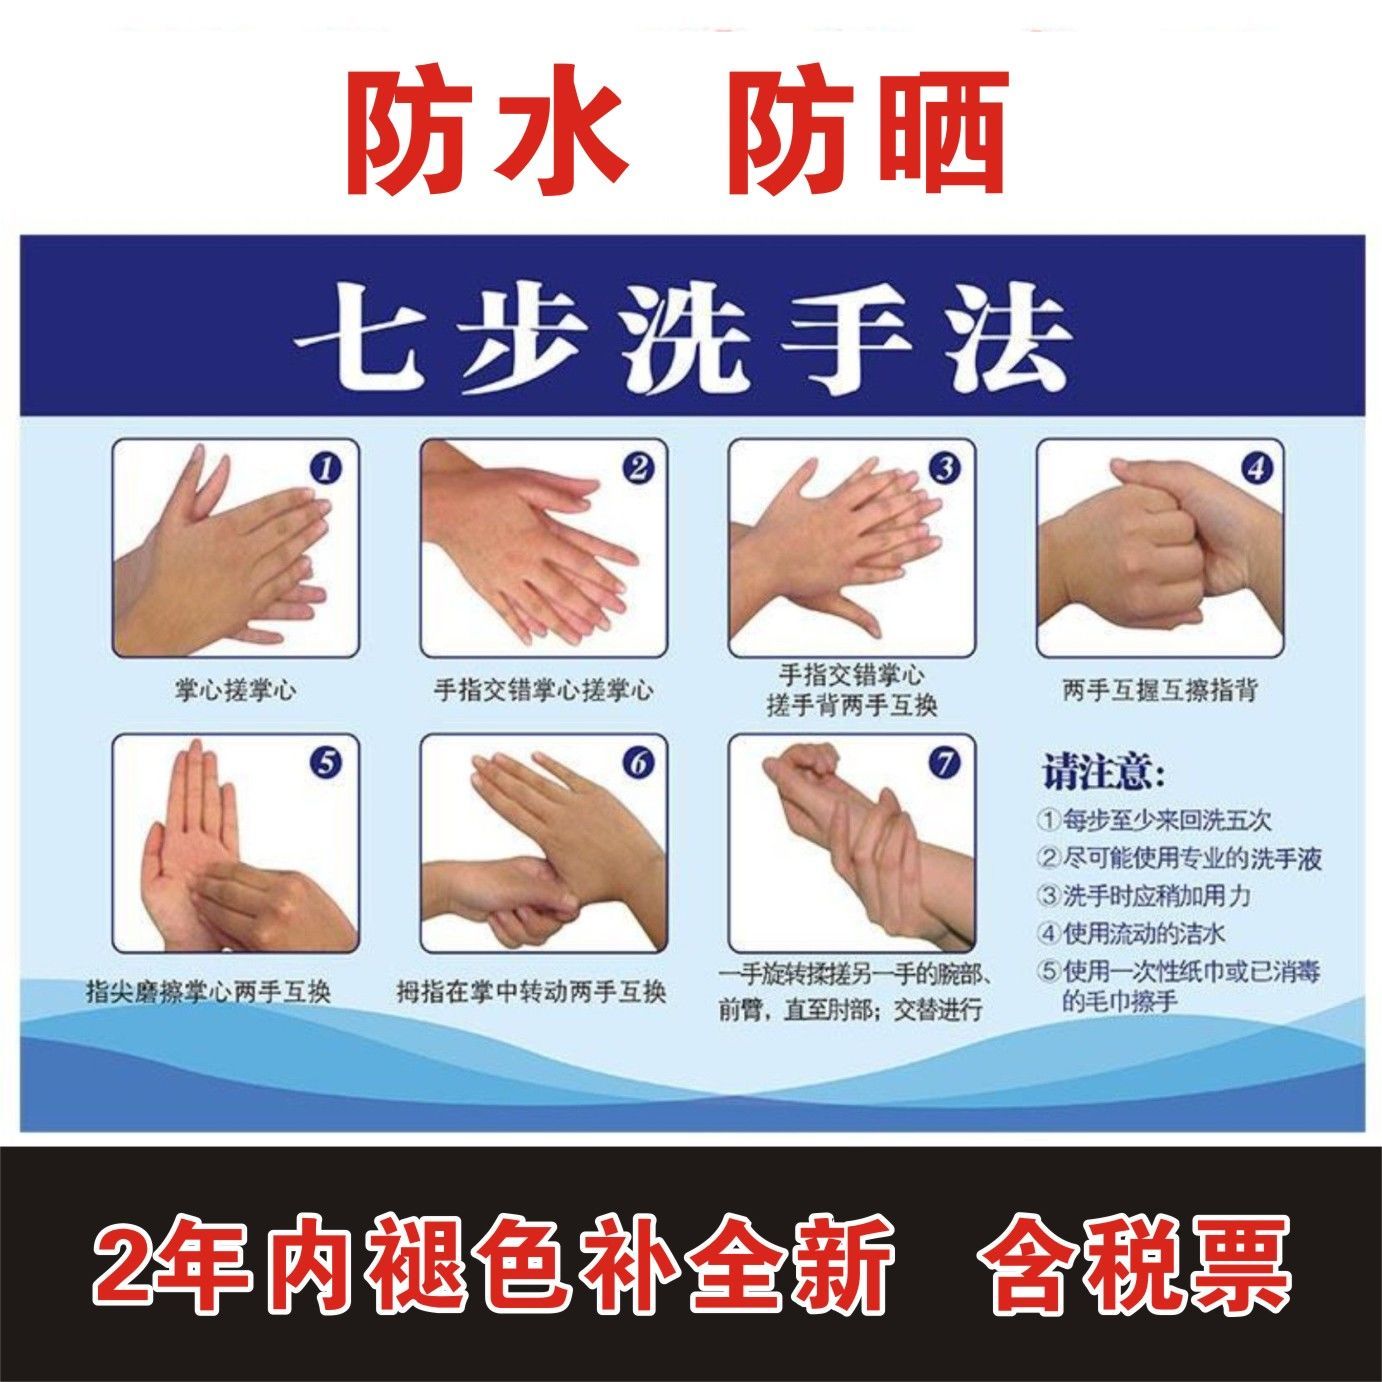 医院学校正确七步洗手法海报幼儿园卫生间标准7步洗手步骤图墙贴